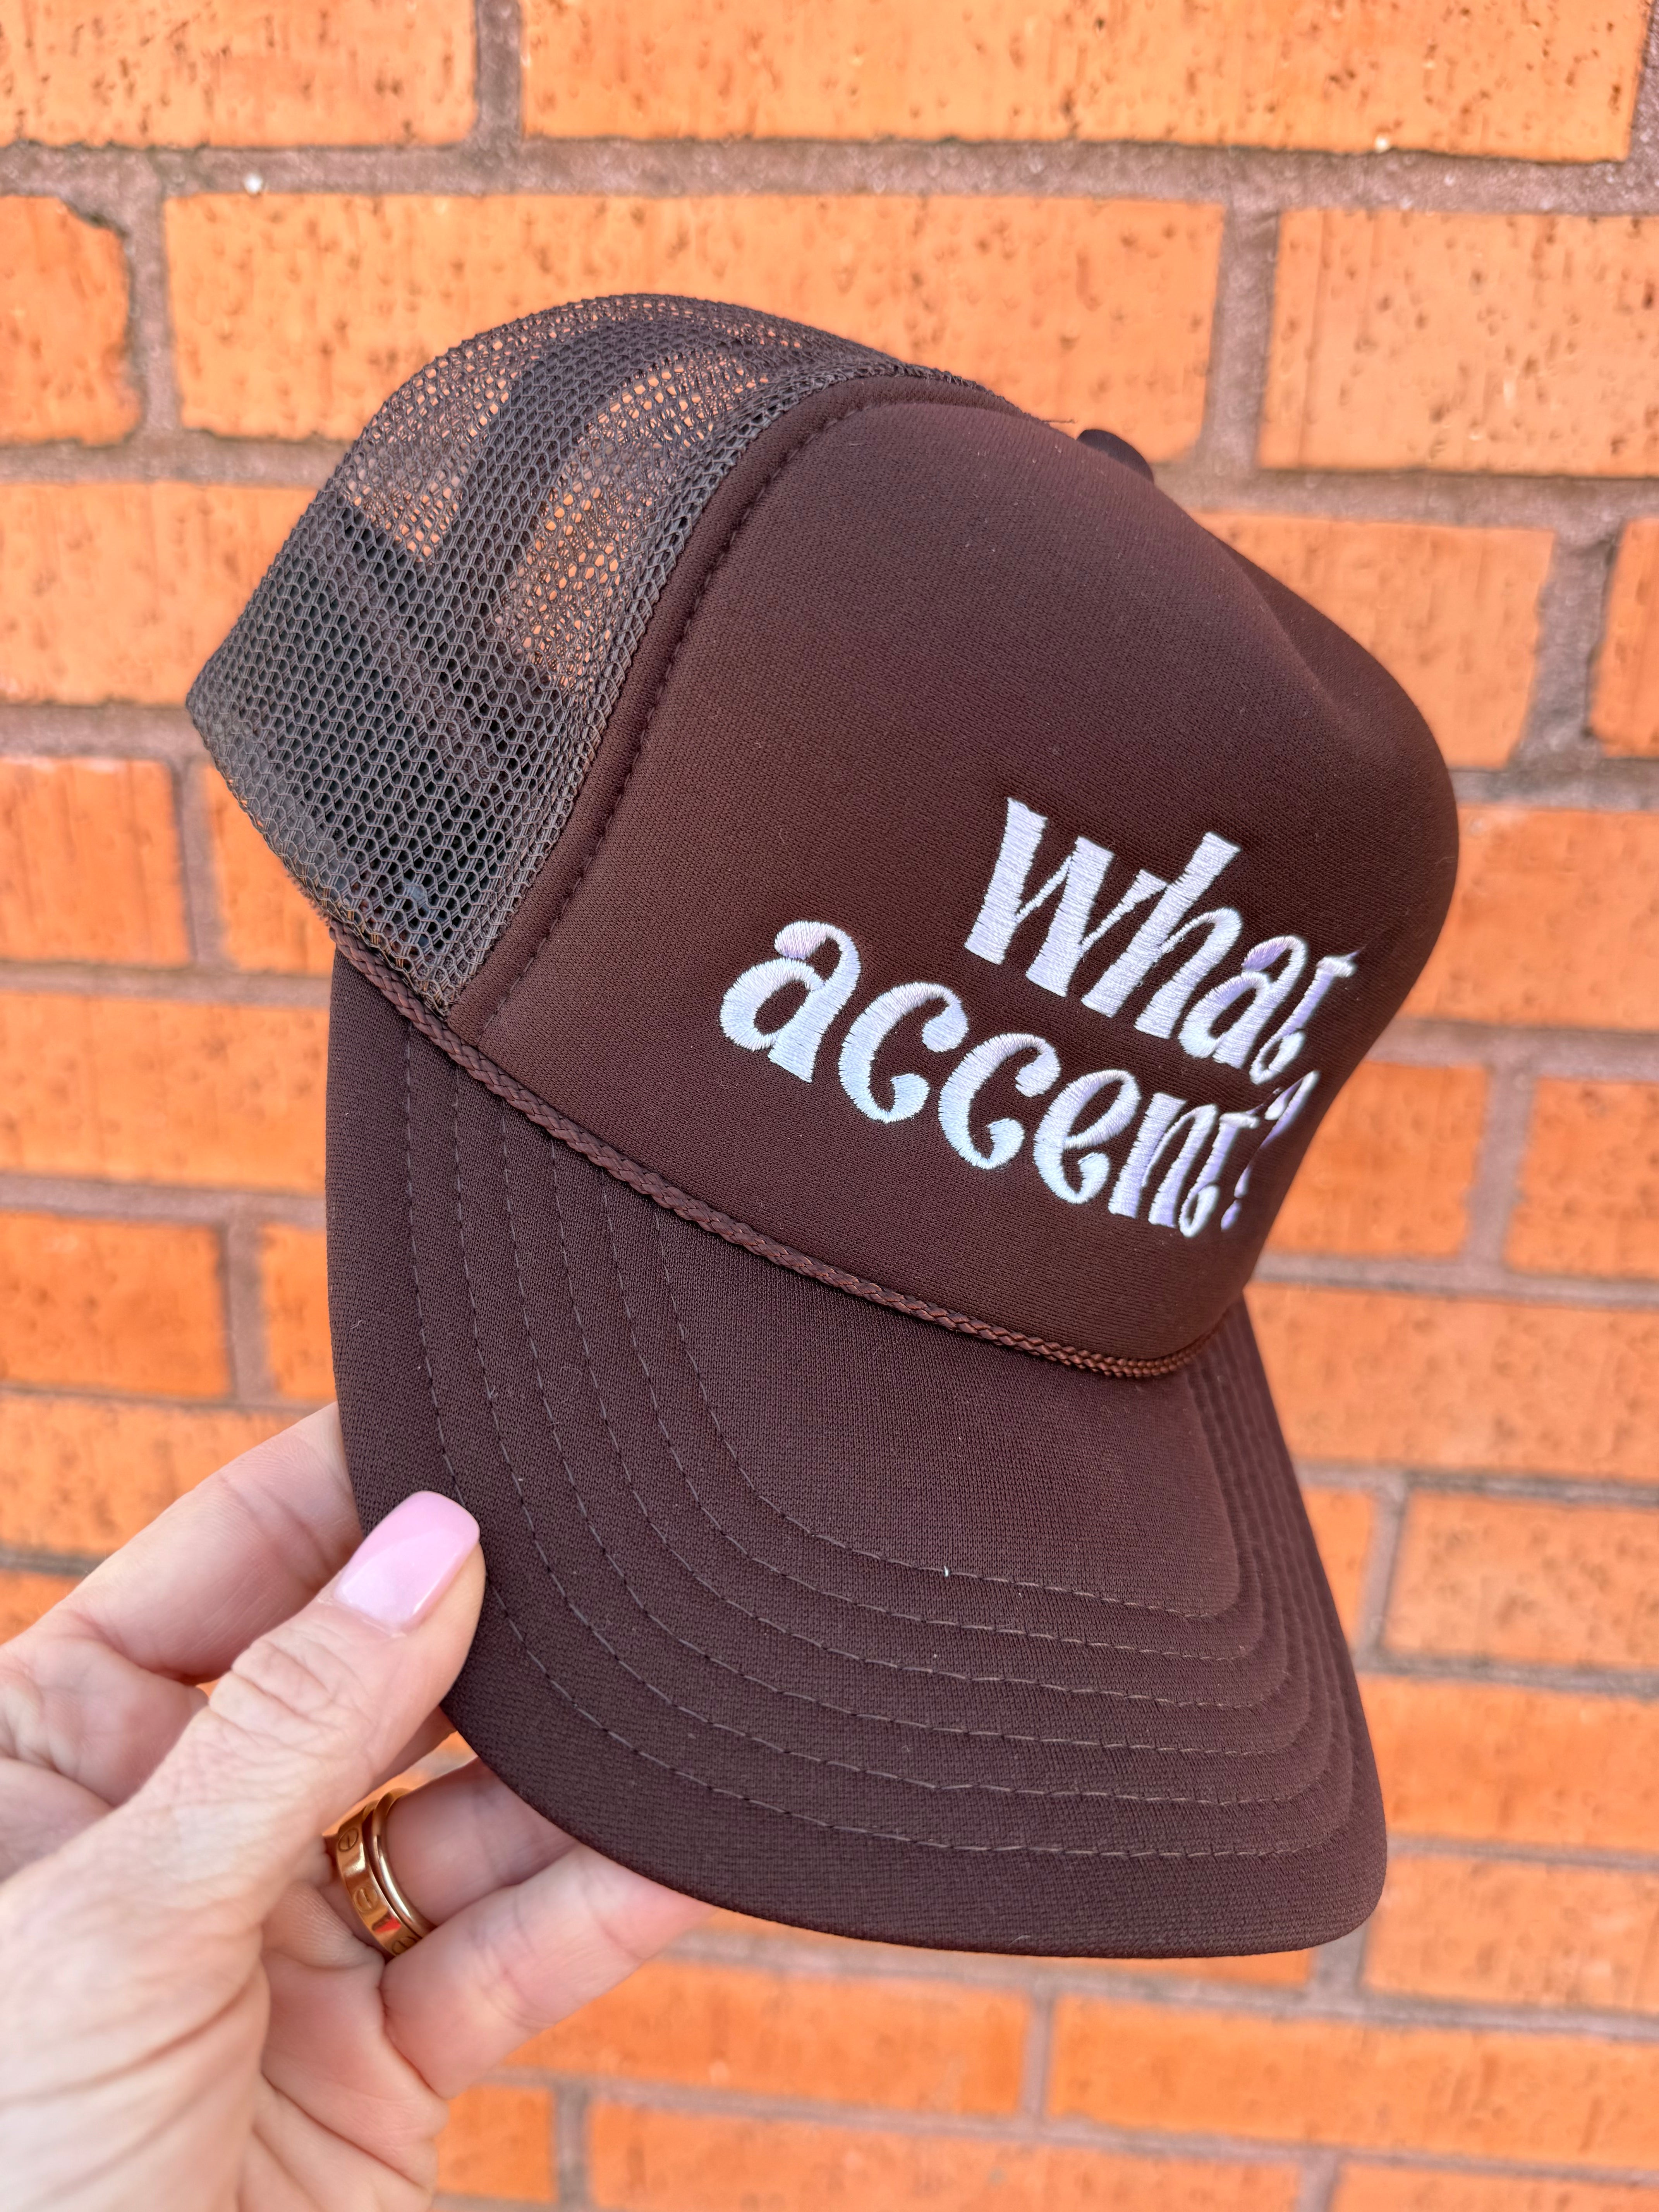 "What Accent?" Trucker Hat